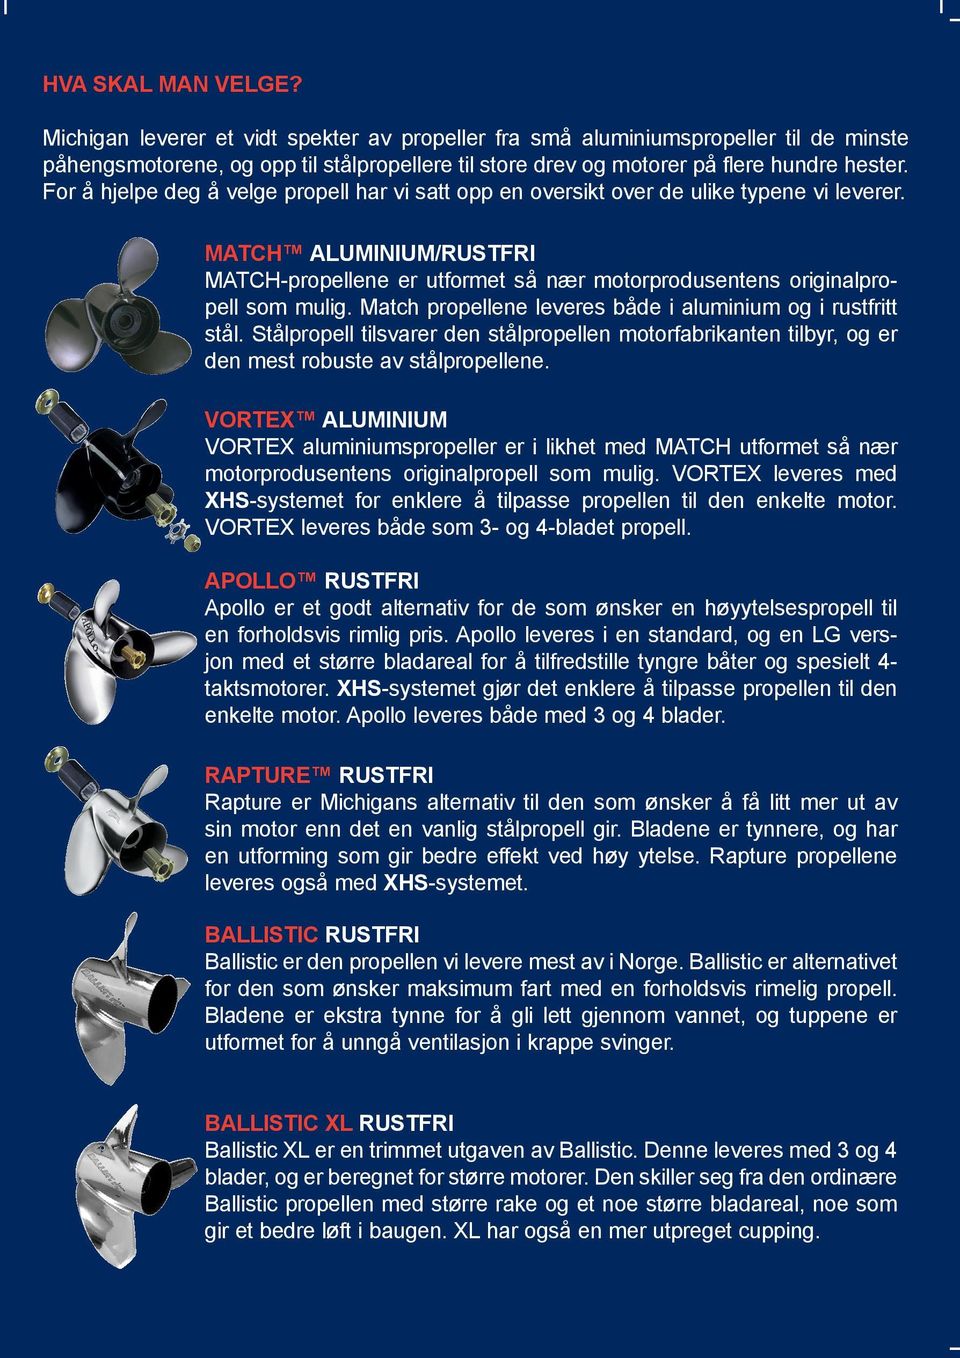 Match propellene leveres både i aluminium og i rustfritt stål. Stålpropell tilsvarer den stålpropellen motorfabrikanten tilbyr, og er den mest robuste av stålpropellene.